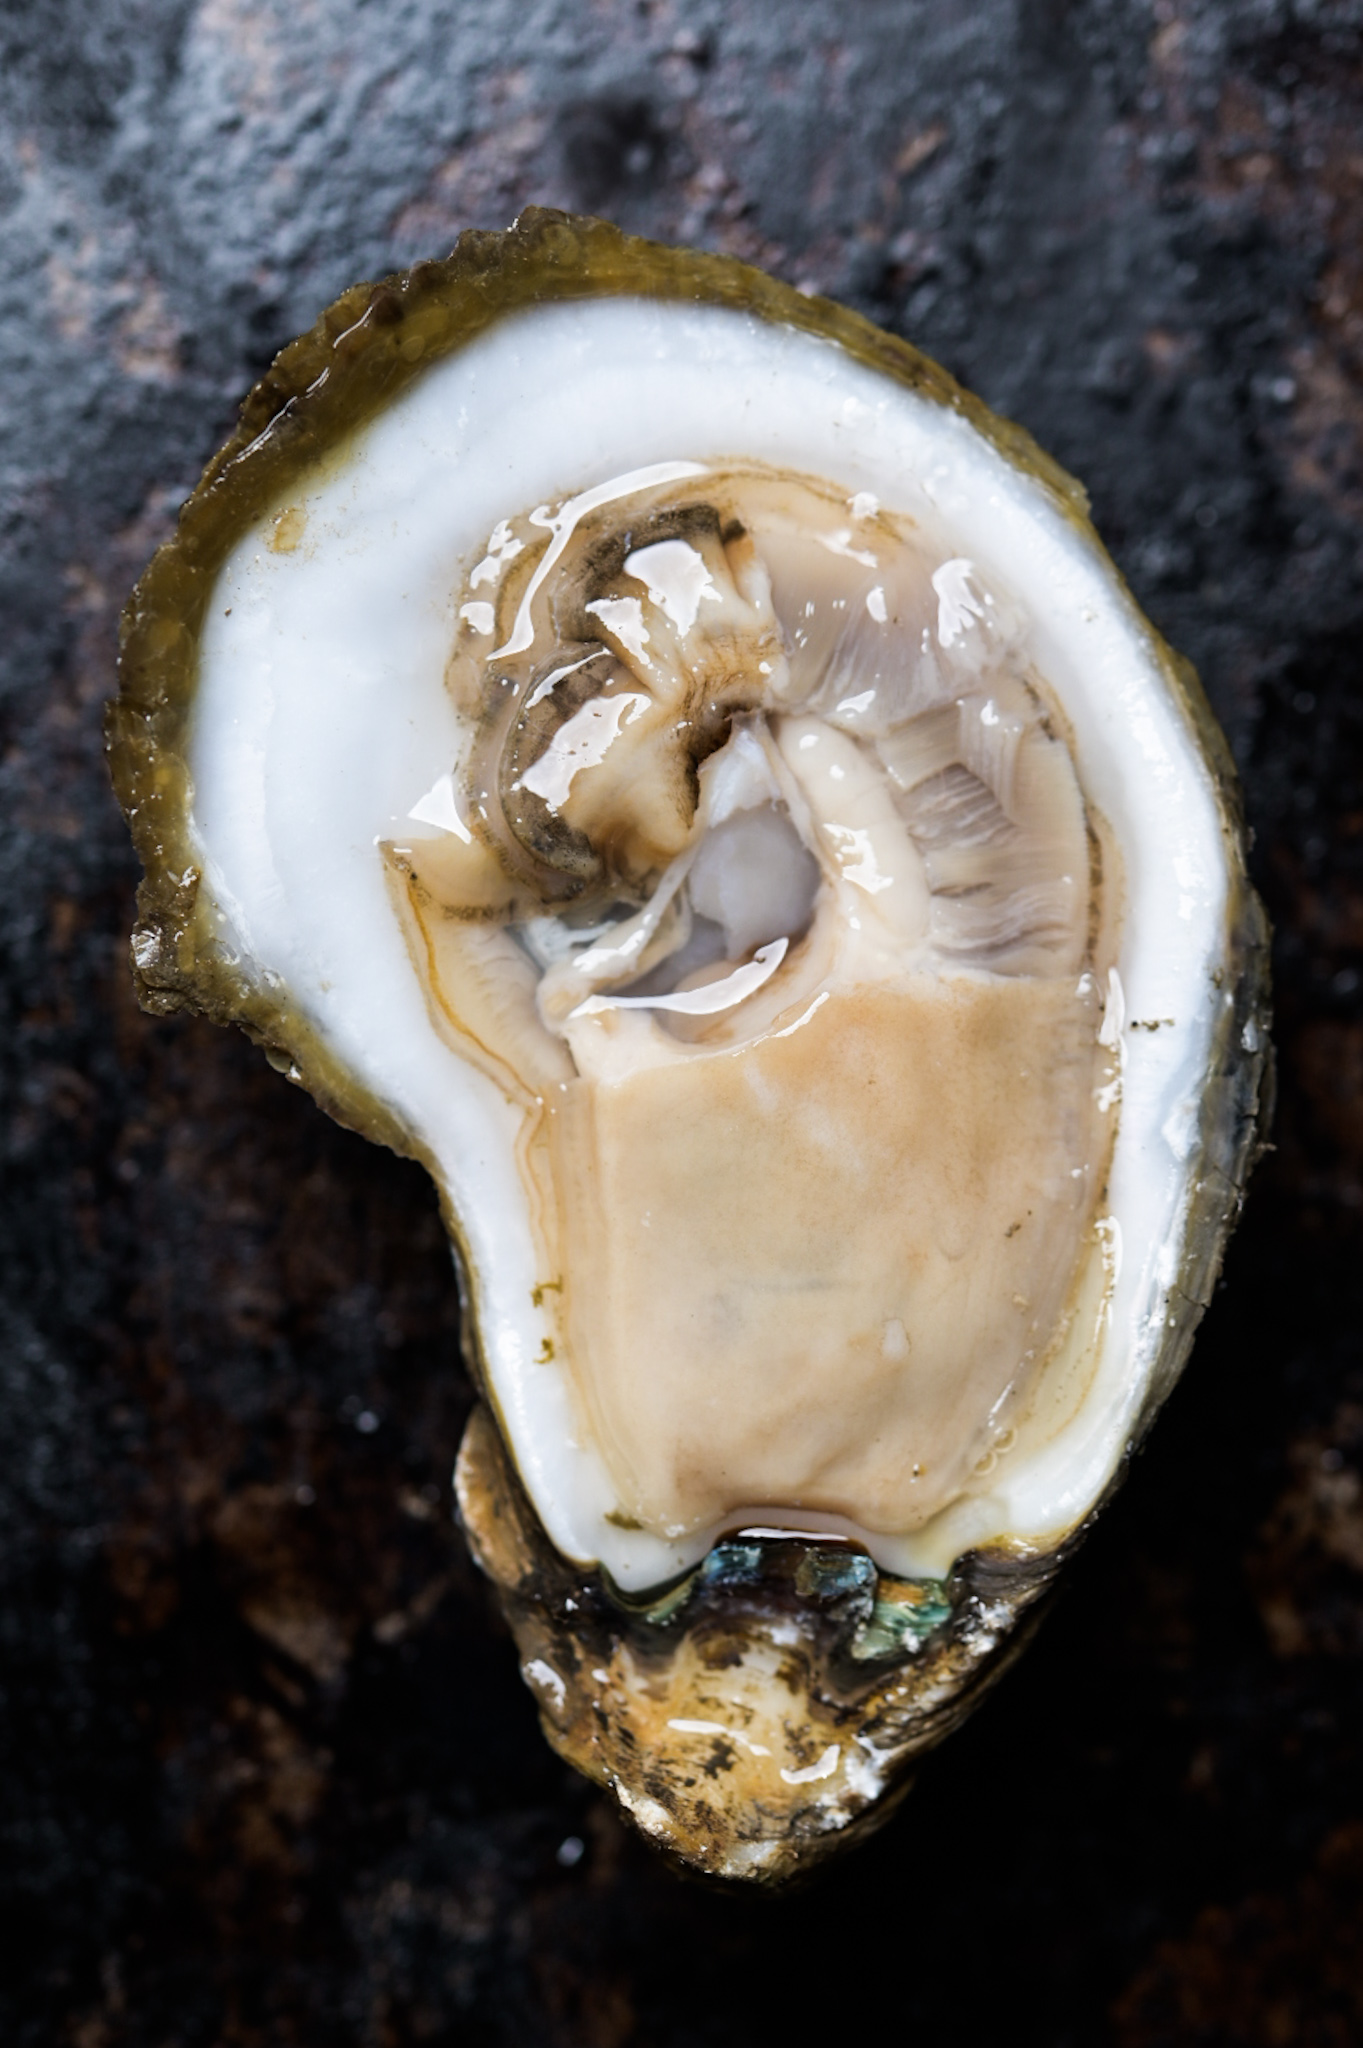 A shucked raw Gulf oyster